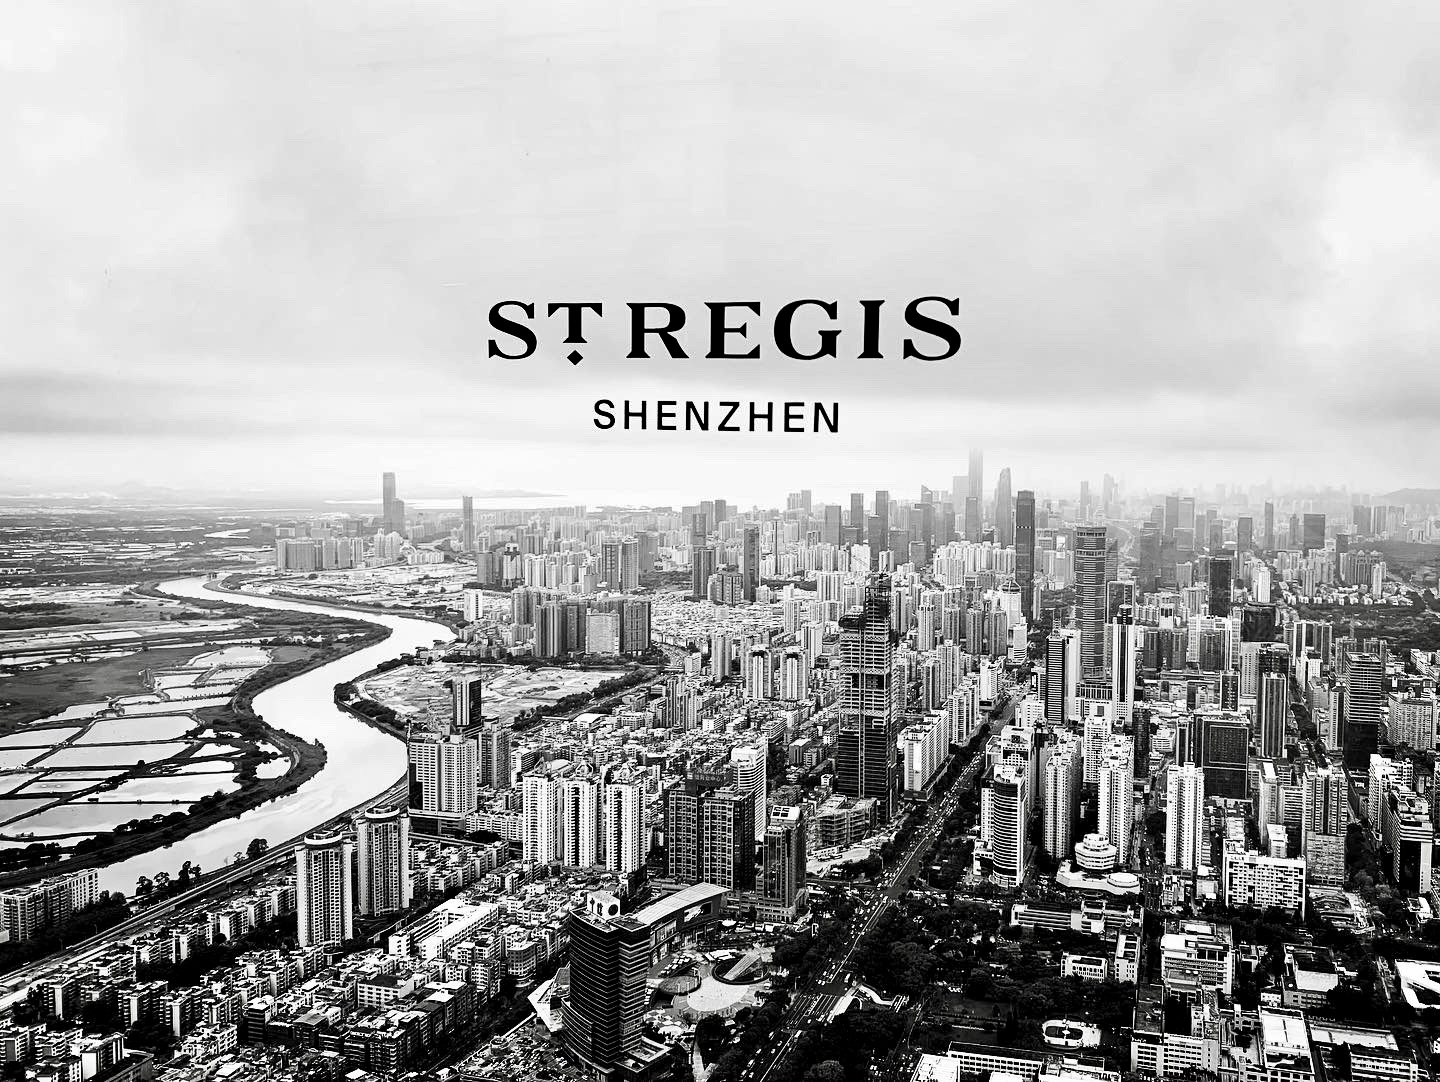 St. Regis Shenzhen